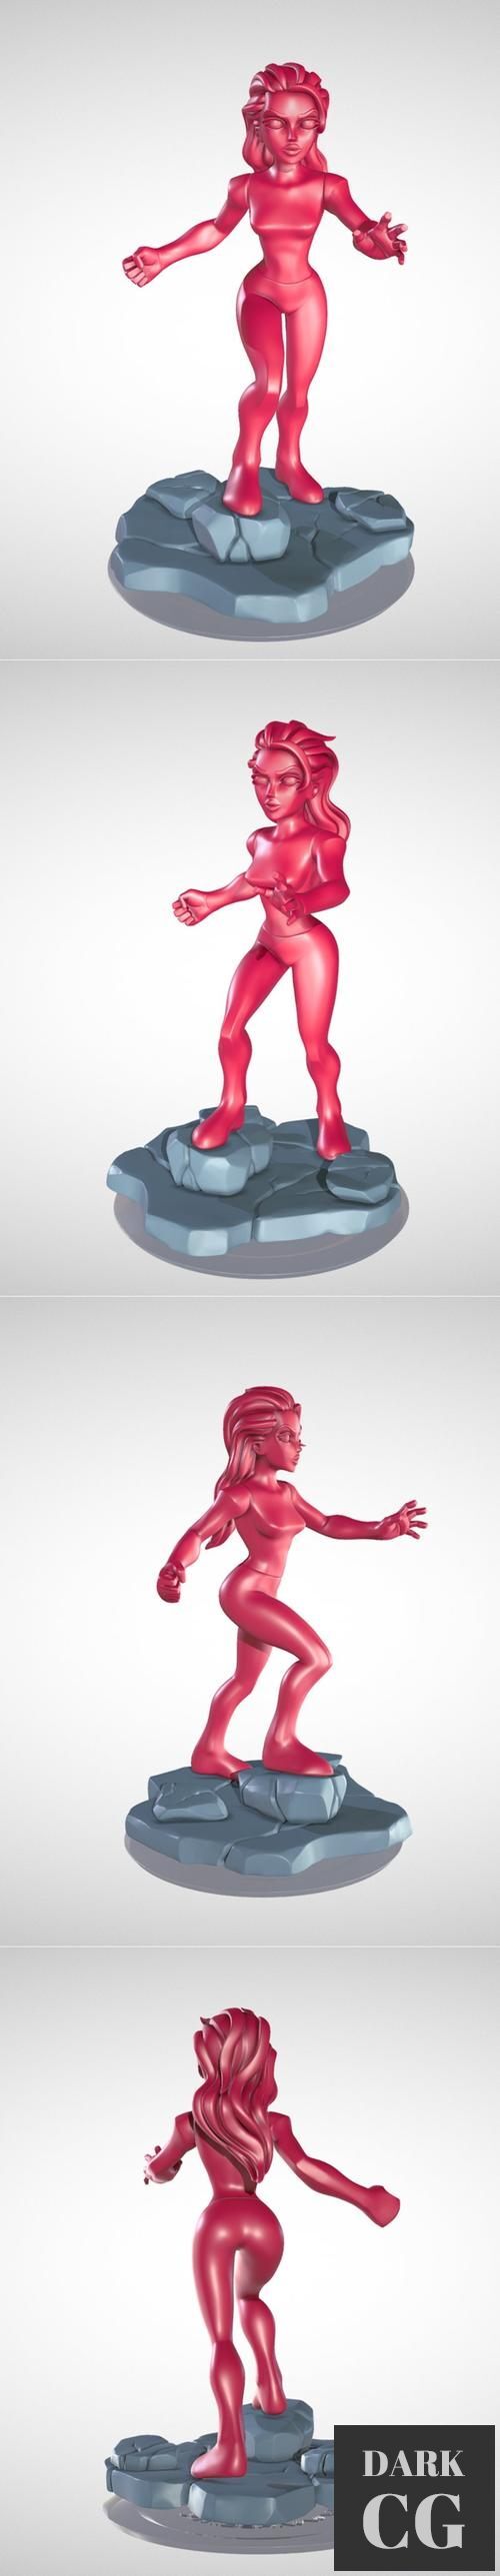 Infinidudette Pose A – 3D Print